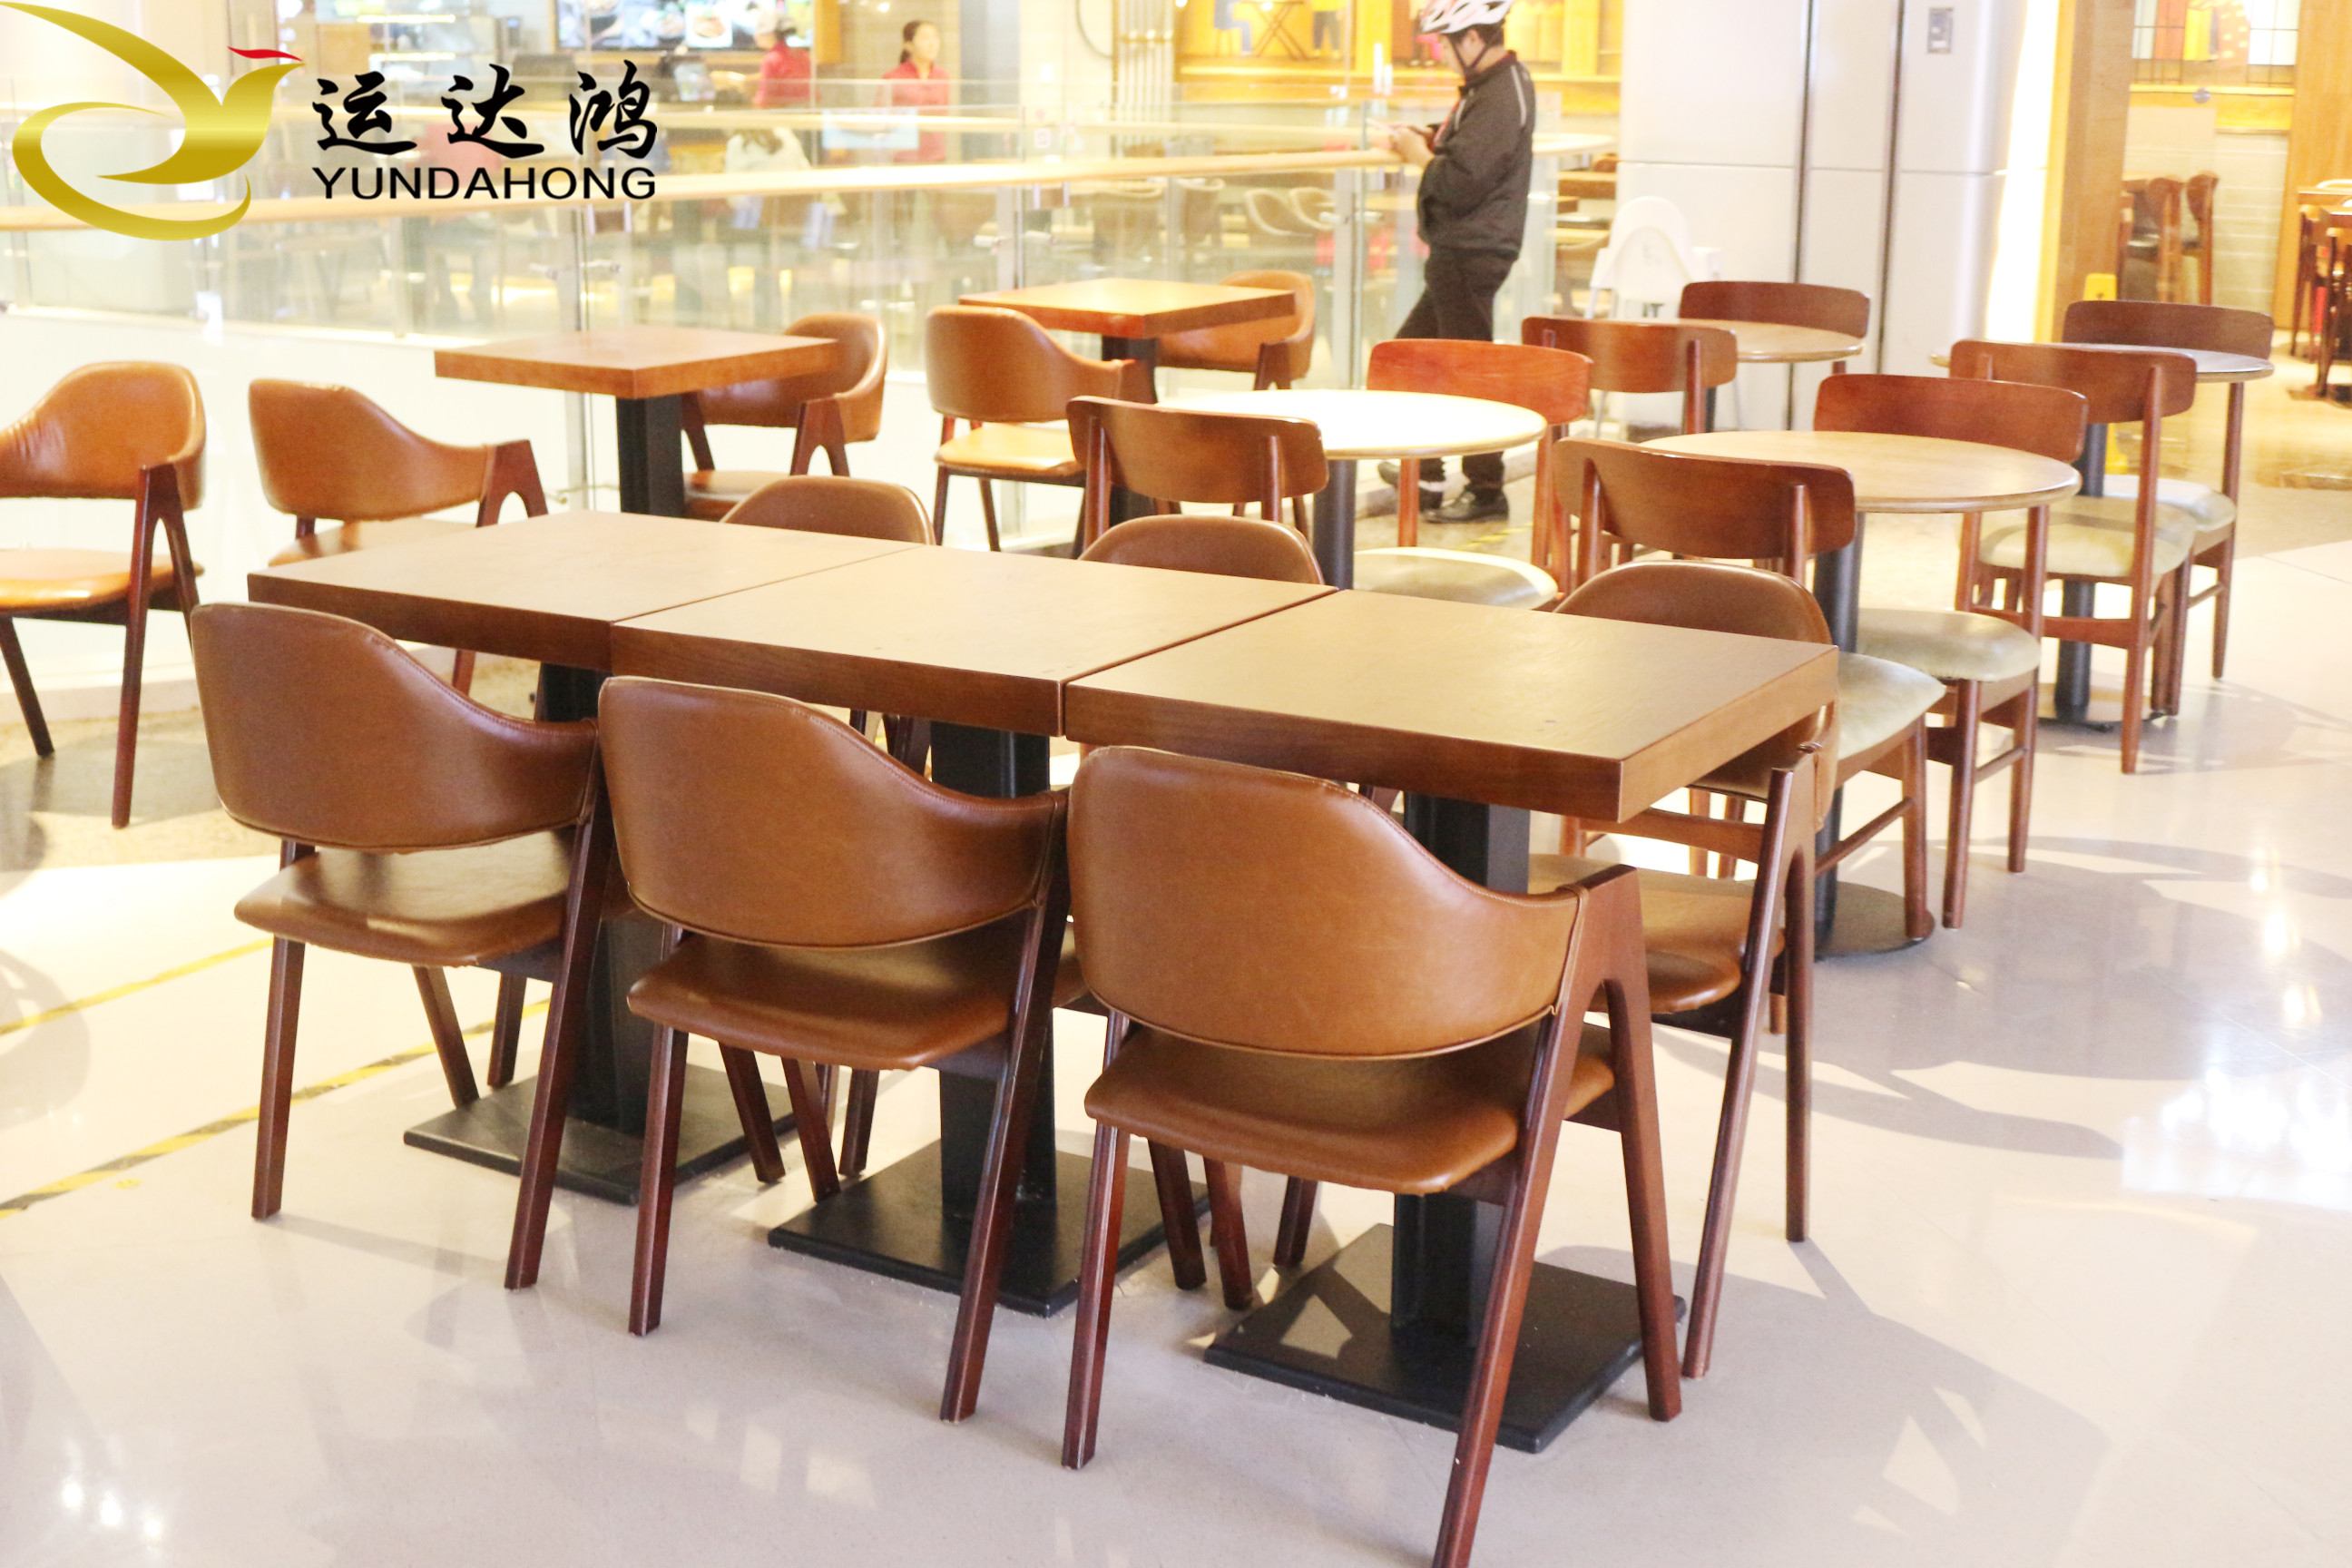 餐桌 深圳餐桌价格 餐厅餐桌椅定制  深圳实木餐桌工厂咖啡厅餐桌